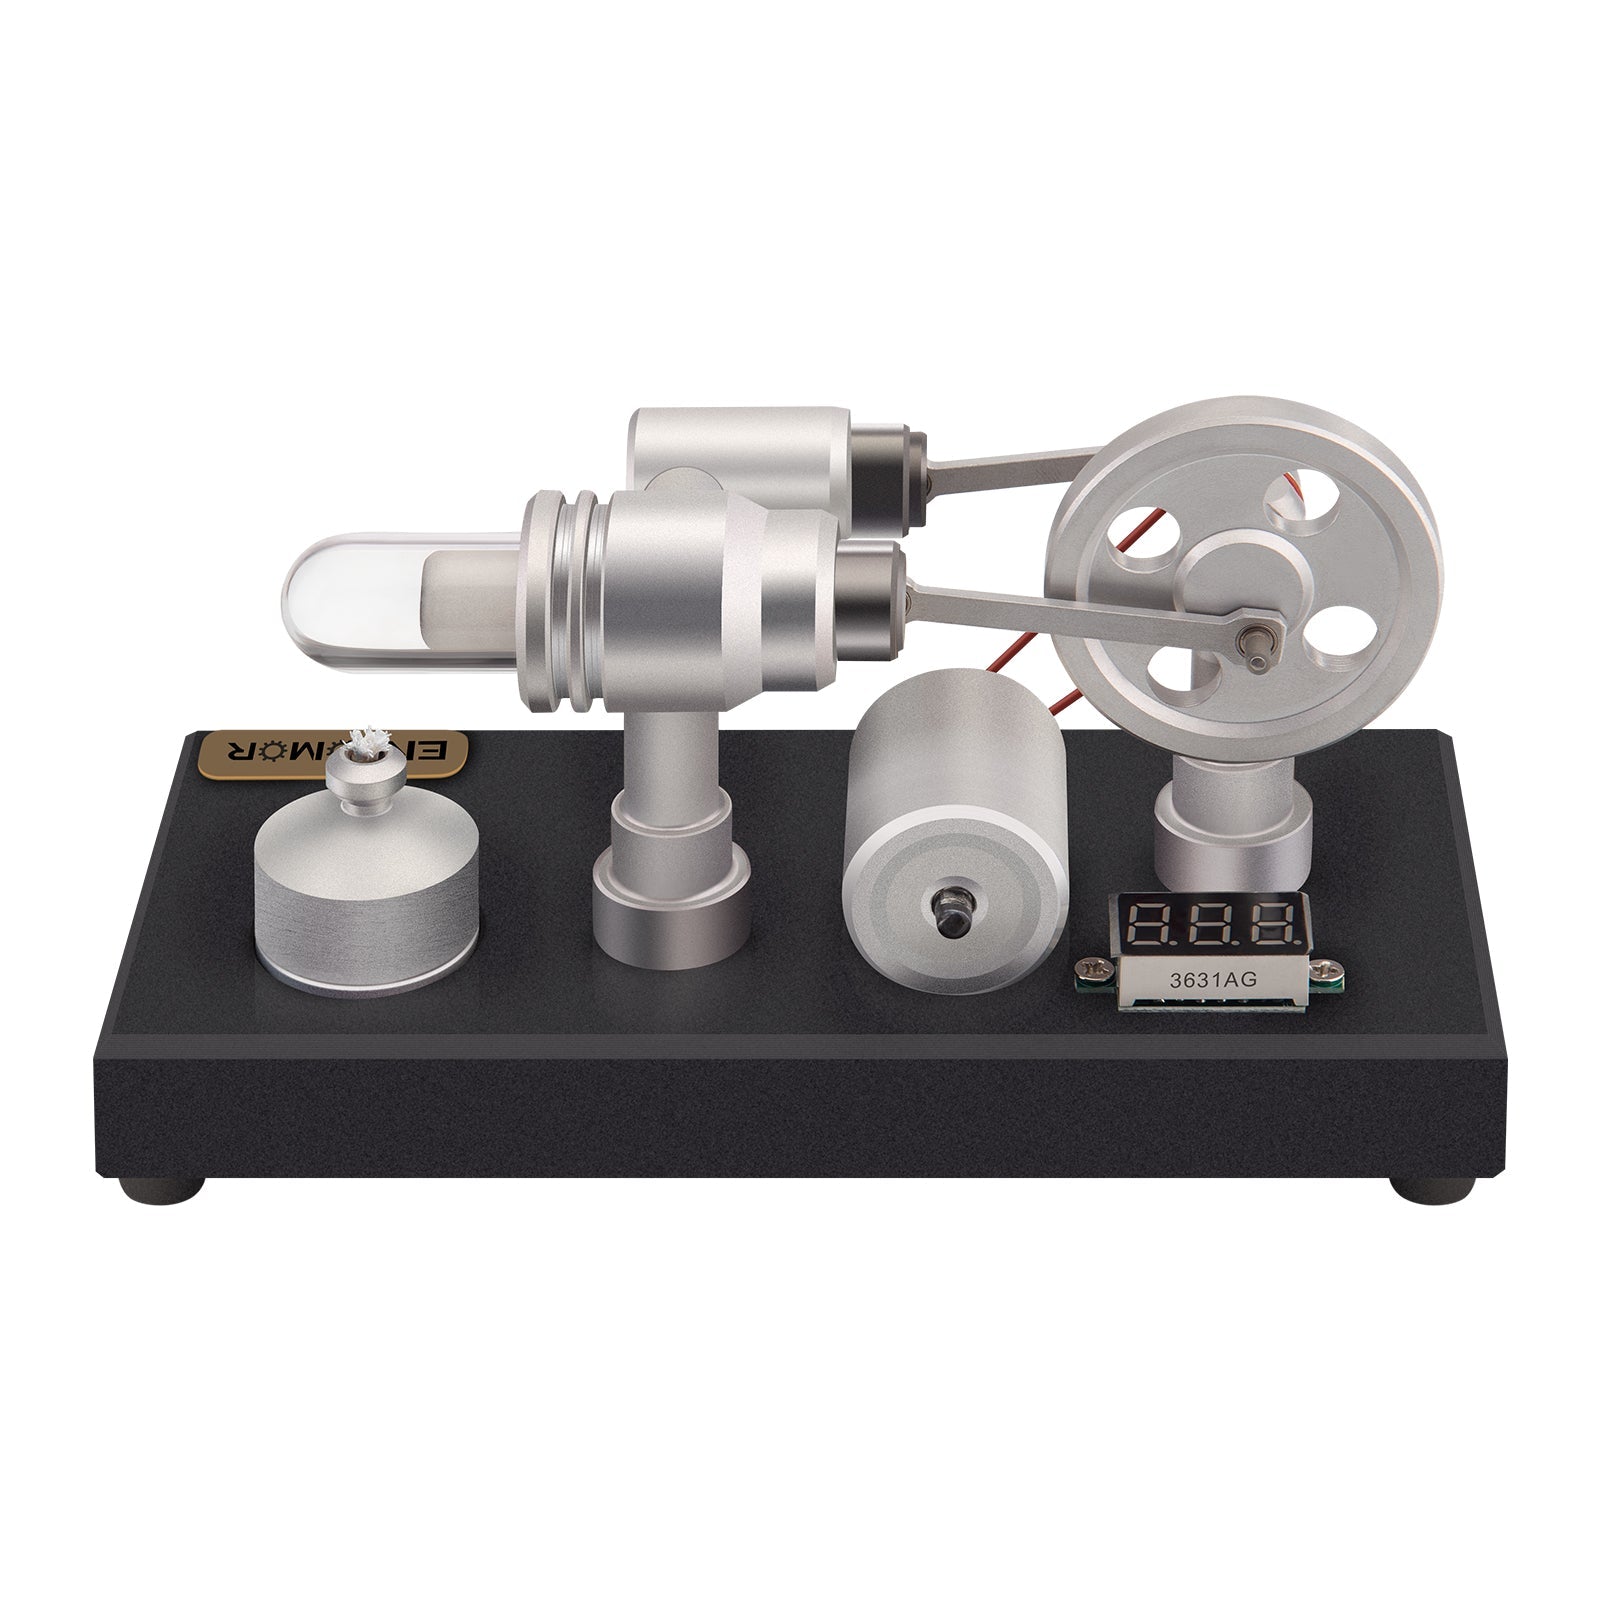 ENJOMOR γ-Type Hot-air Stirling Engine External Combustion Model LED Lights Voltage Digital Display Meter Generator Model Toy